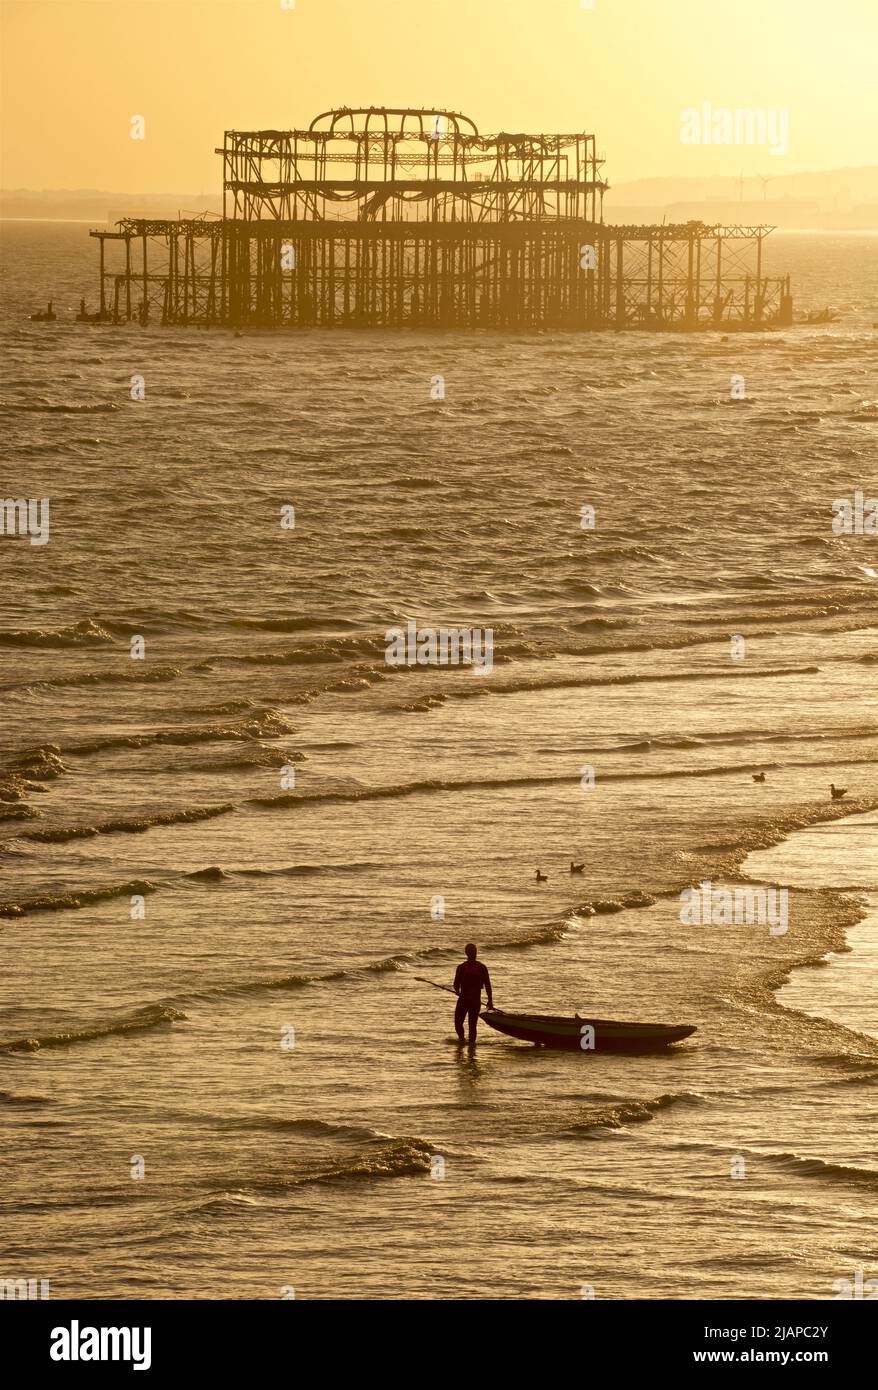 Silhoueted formes d'homme avec kayak sur le rivage à marée basse, Brighton & Hove, East Sussex, Angleterre, Royaume-Uni. Vestiges de la jetée ouest en ruines au-delà. Banque D'Images